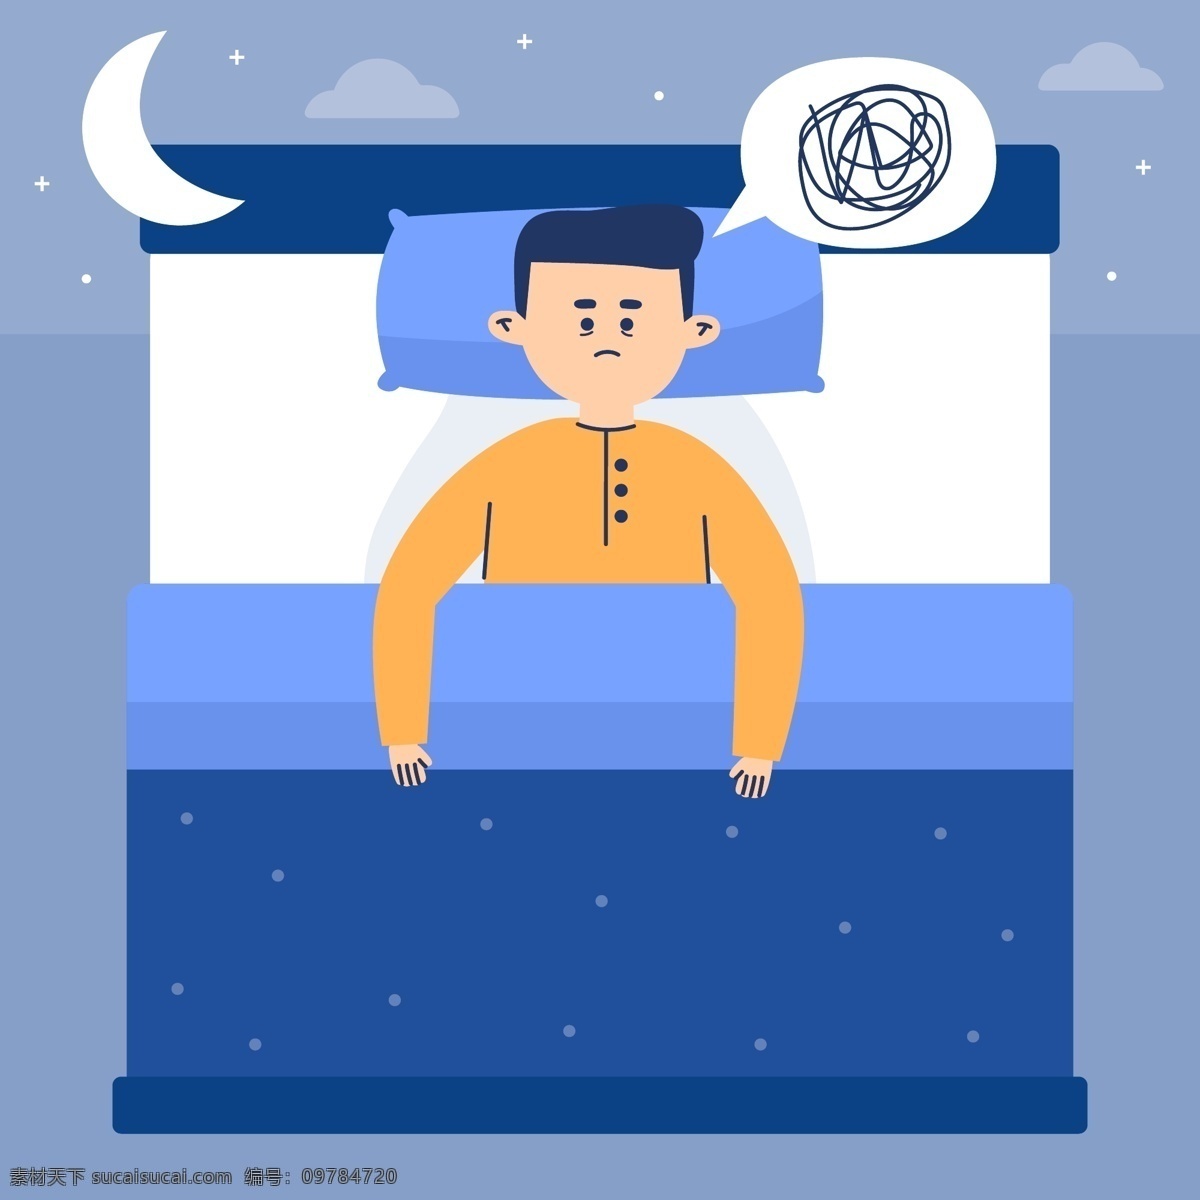 睡姿图片 睡姿 睡觉 休息 睡眠 失眠 生理现象 晚上 夜晚 睡觉姿势 睡着 睡眠状态 卡通设计